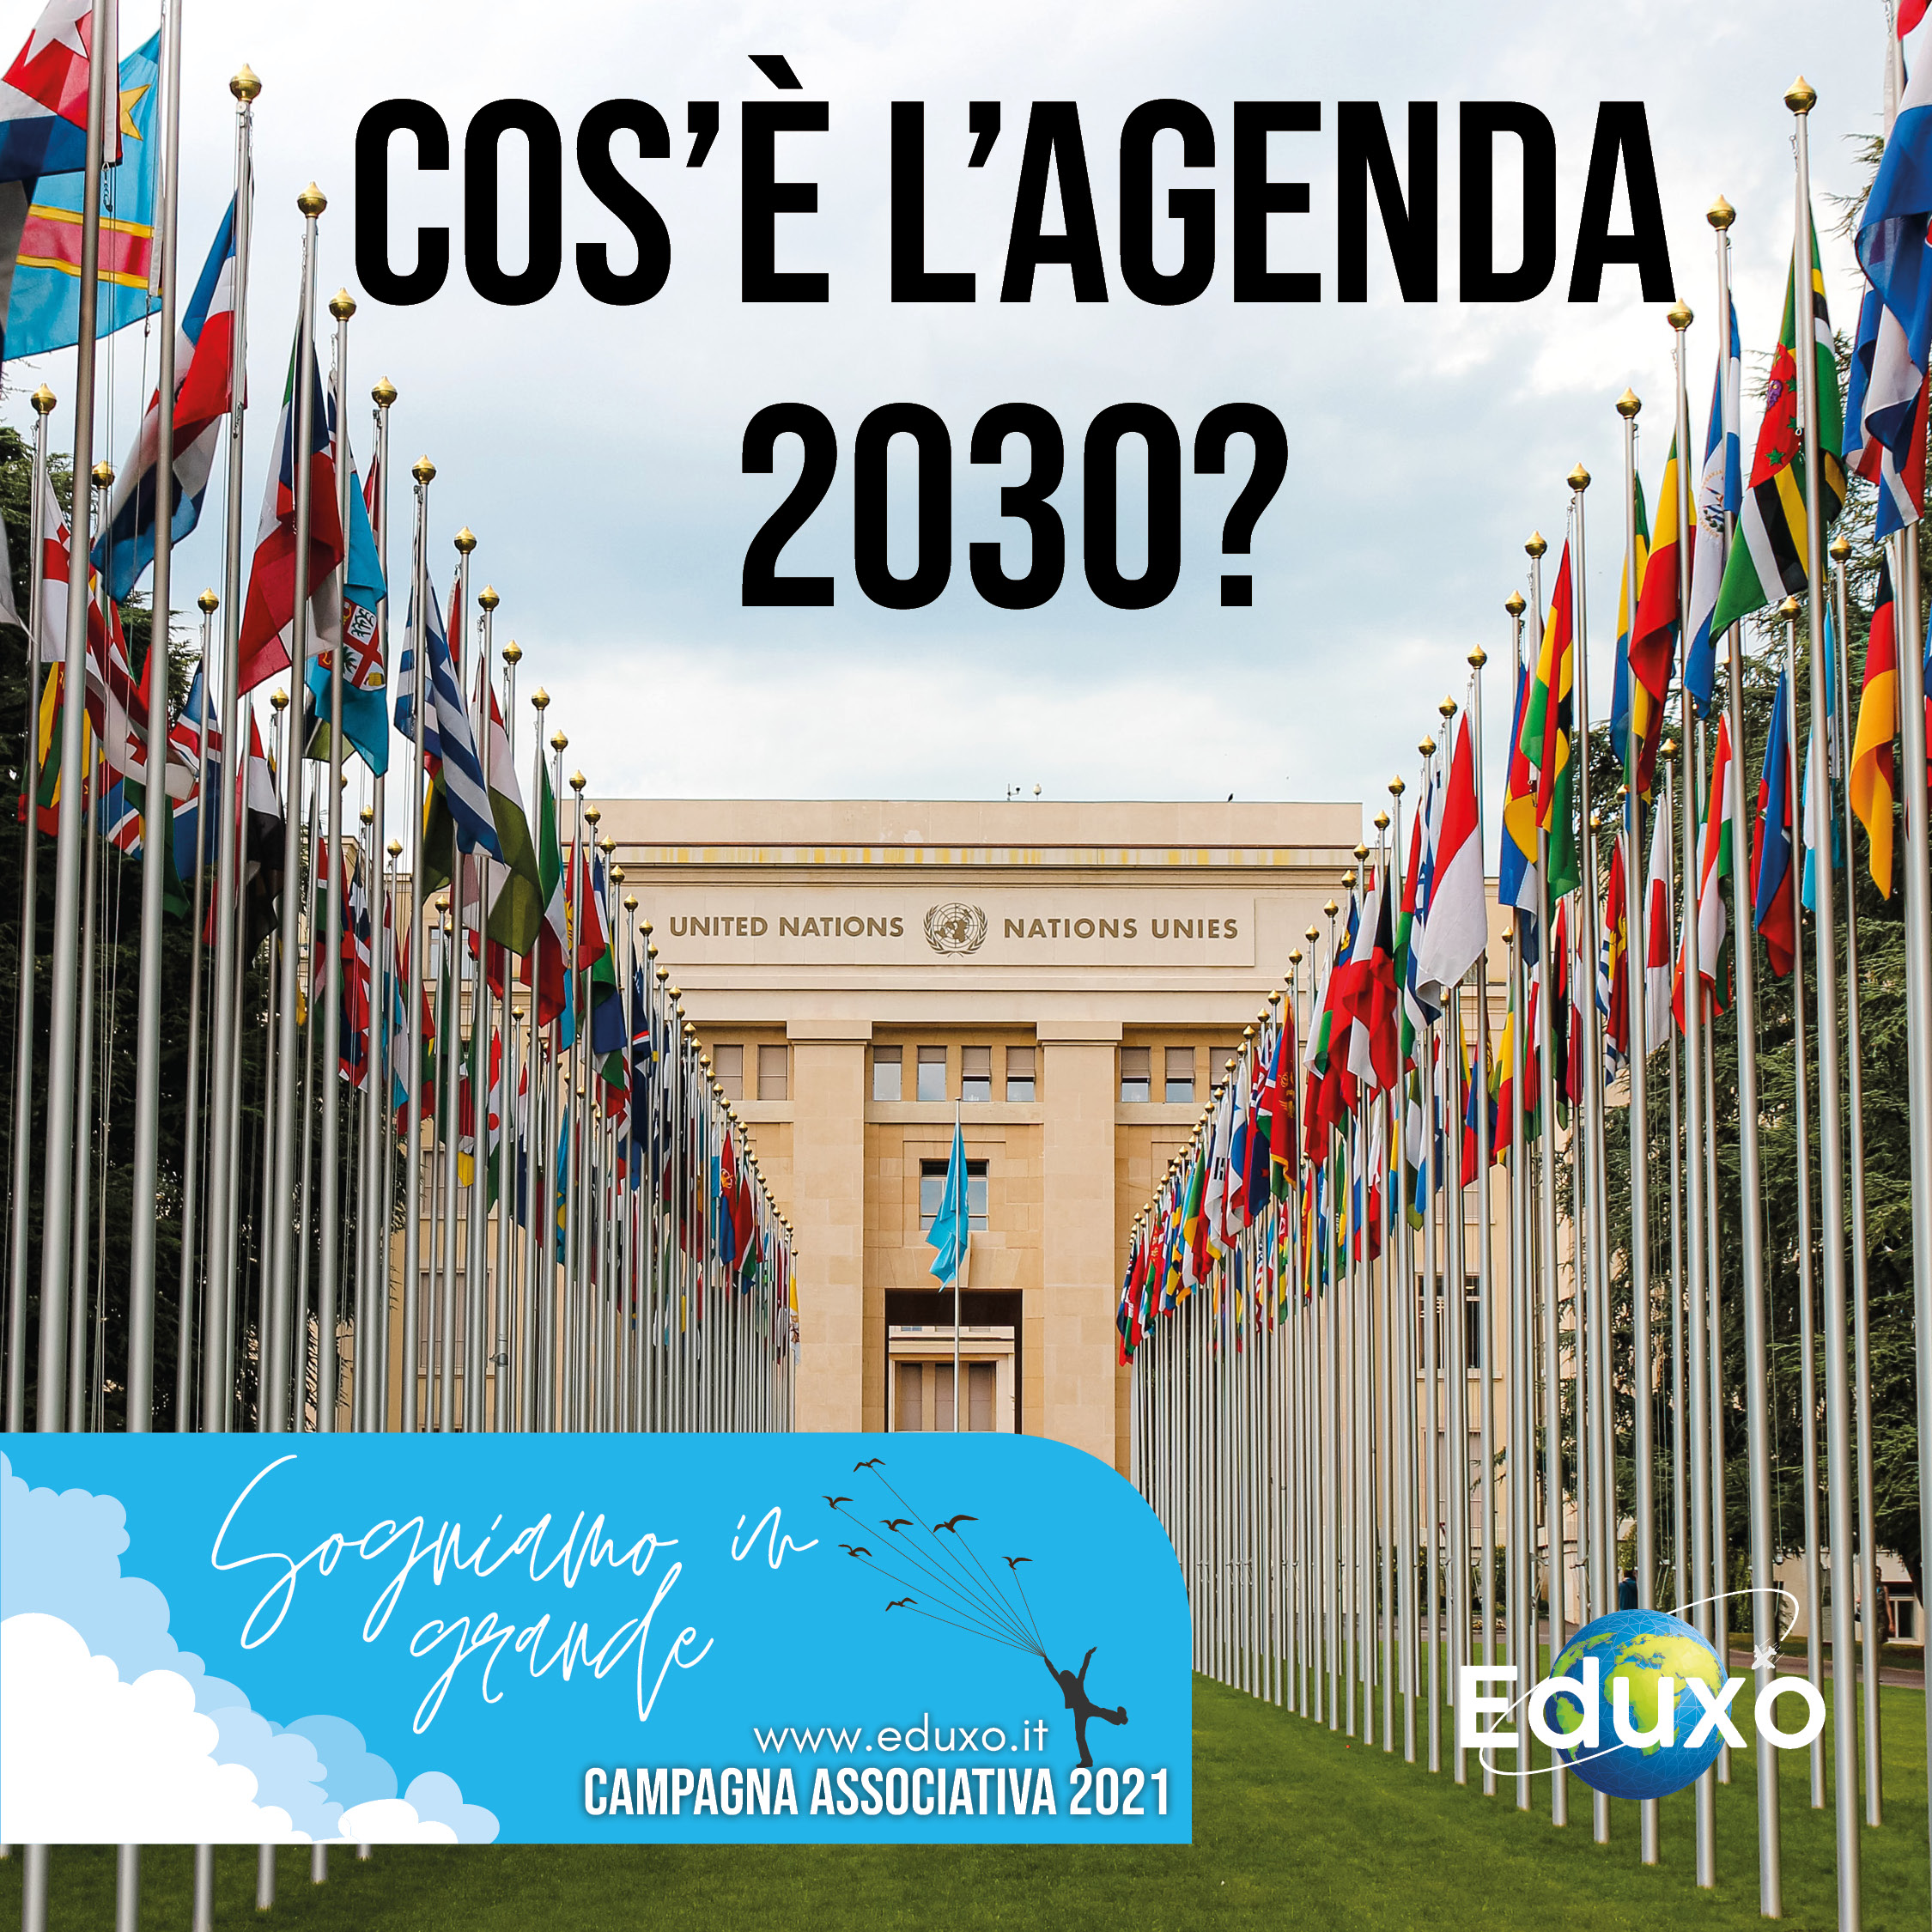 Cos’è l’agenda 2030?